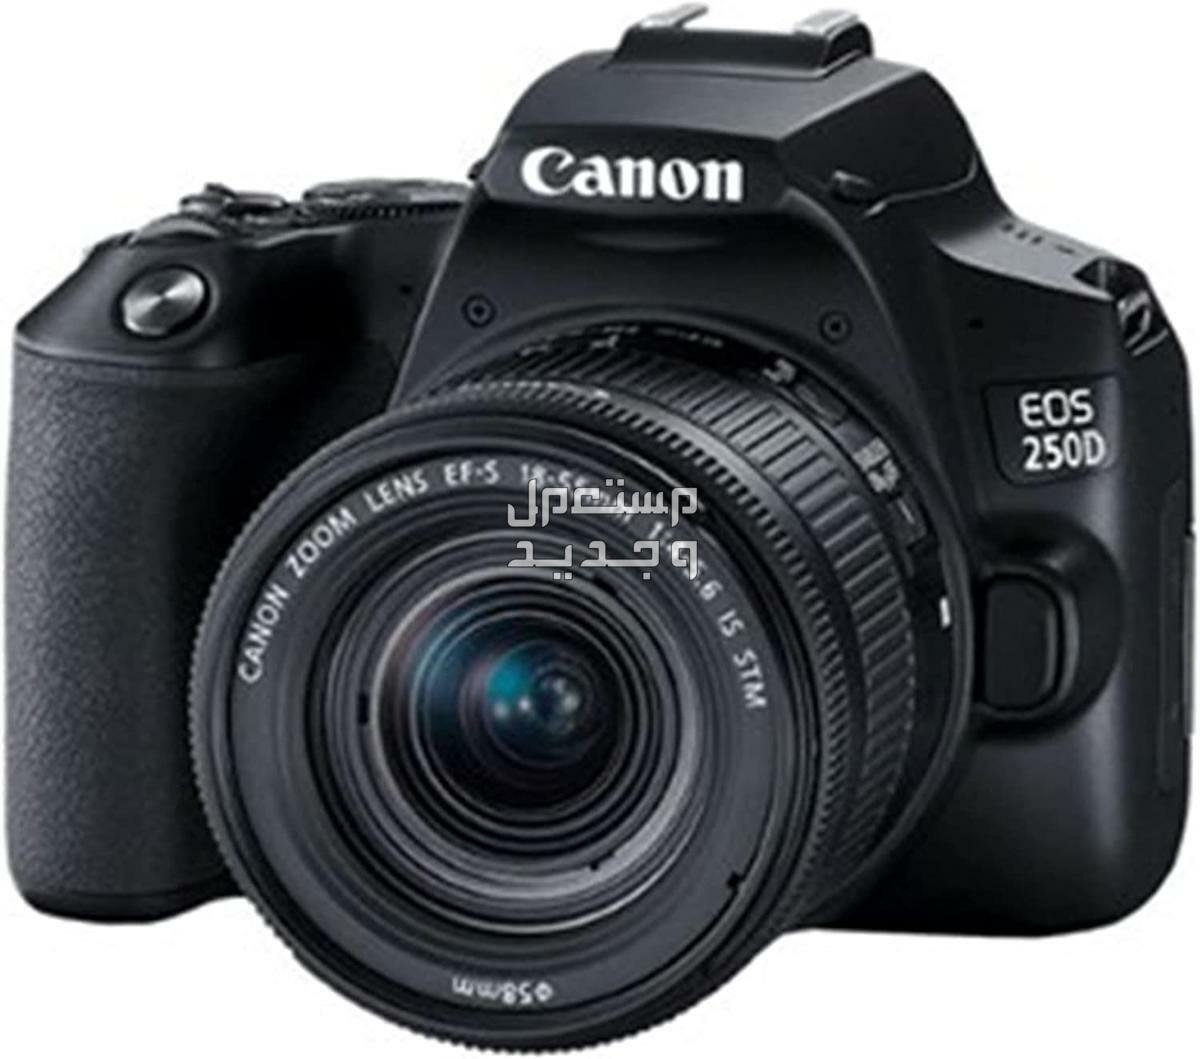 سعر ومميزات ومواصفات أرخص 5 كاميرات تصوير من كانون في الأردن كاميرا Canon EOS 250D